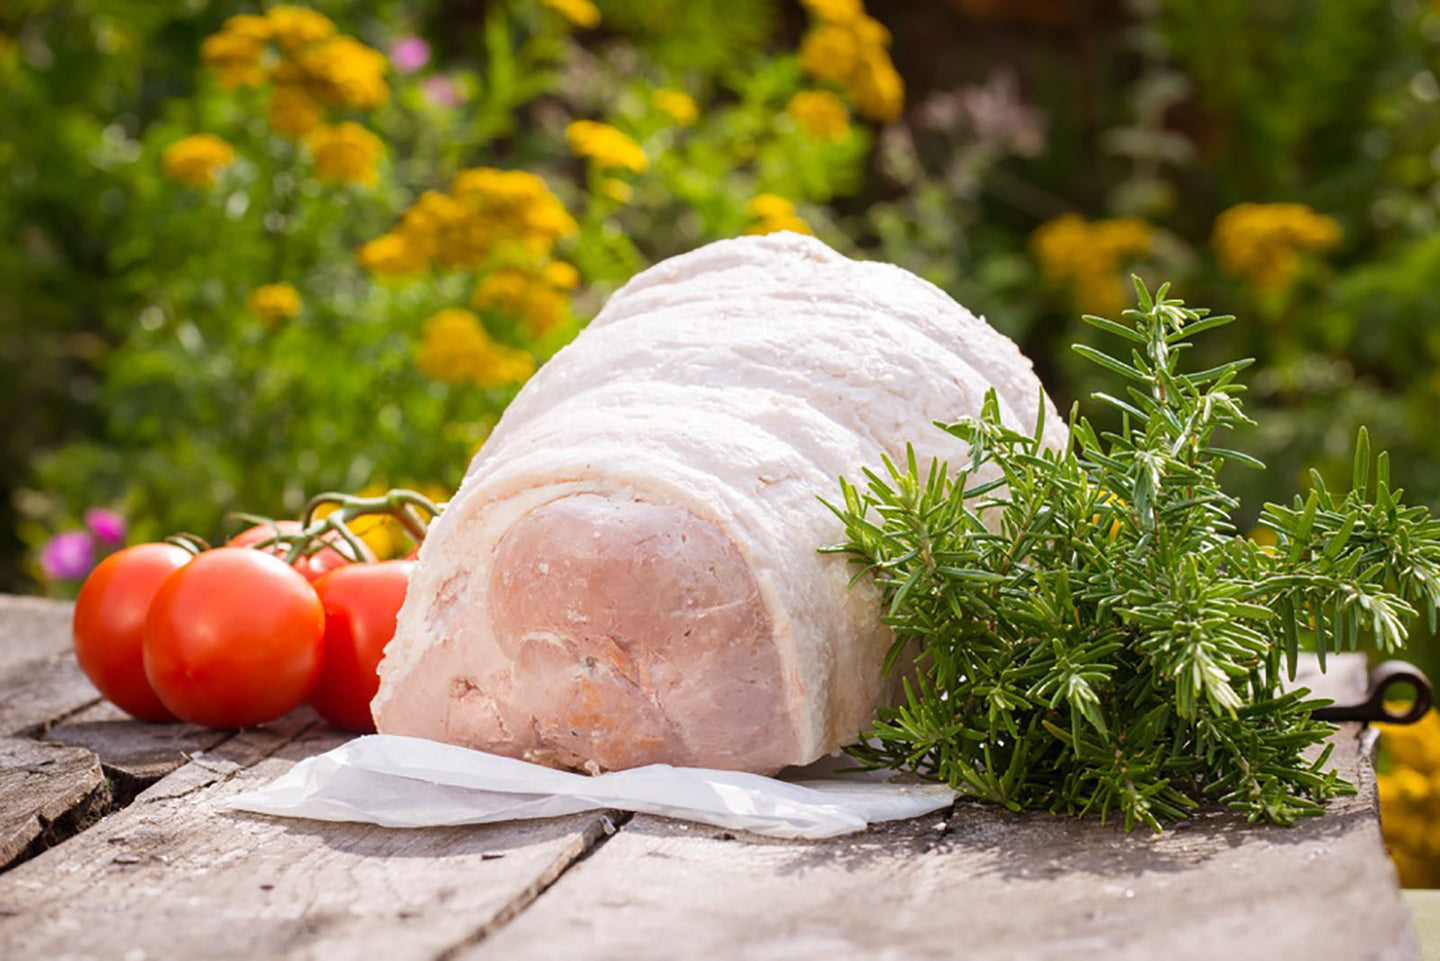 Rosemary Unsmoked Cooked Ham Off The Bone - Emmett's